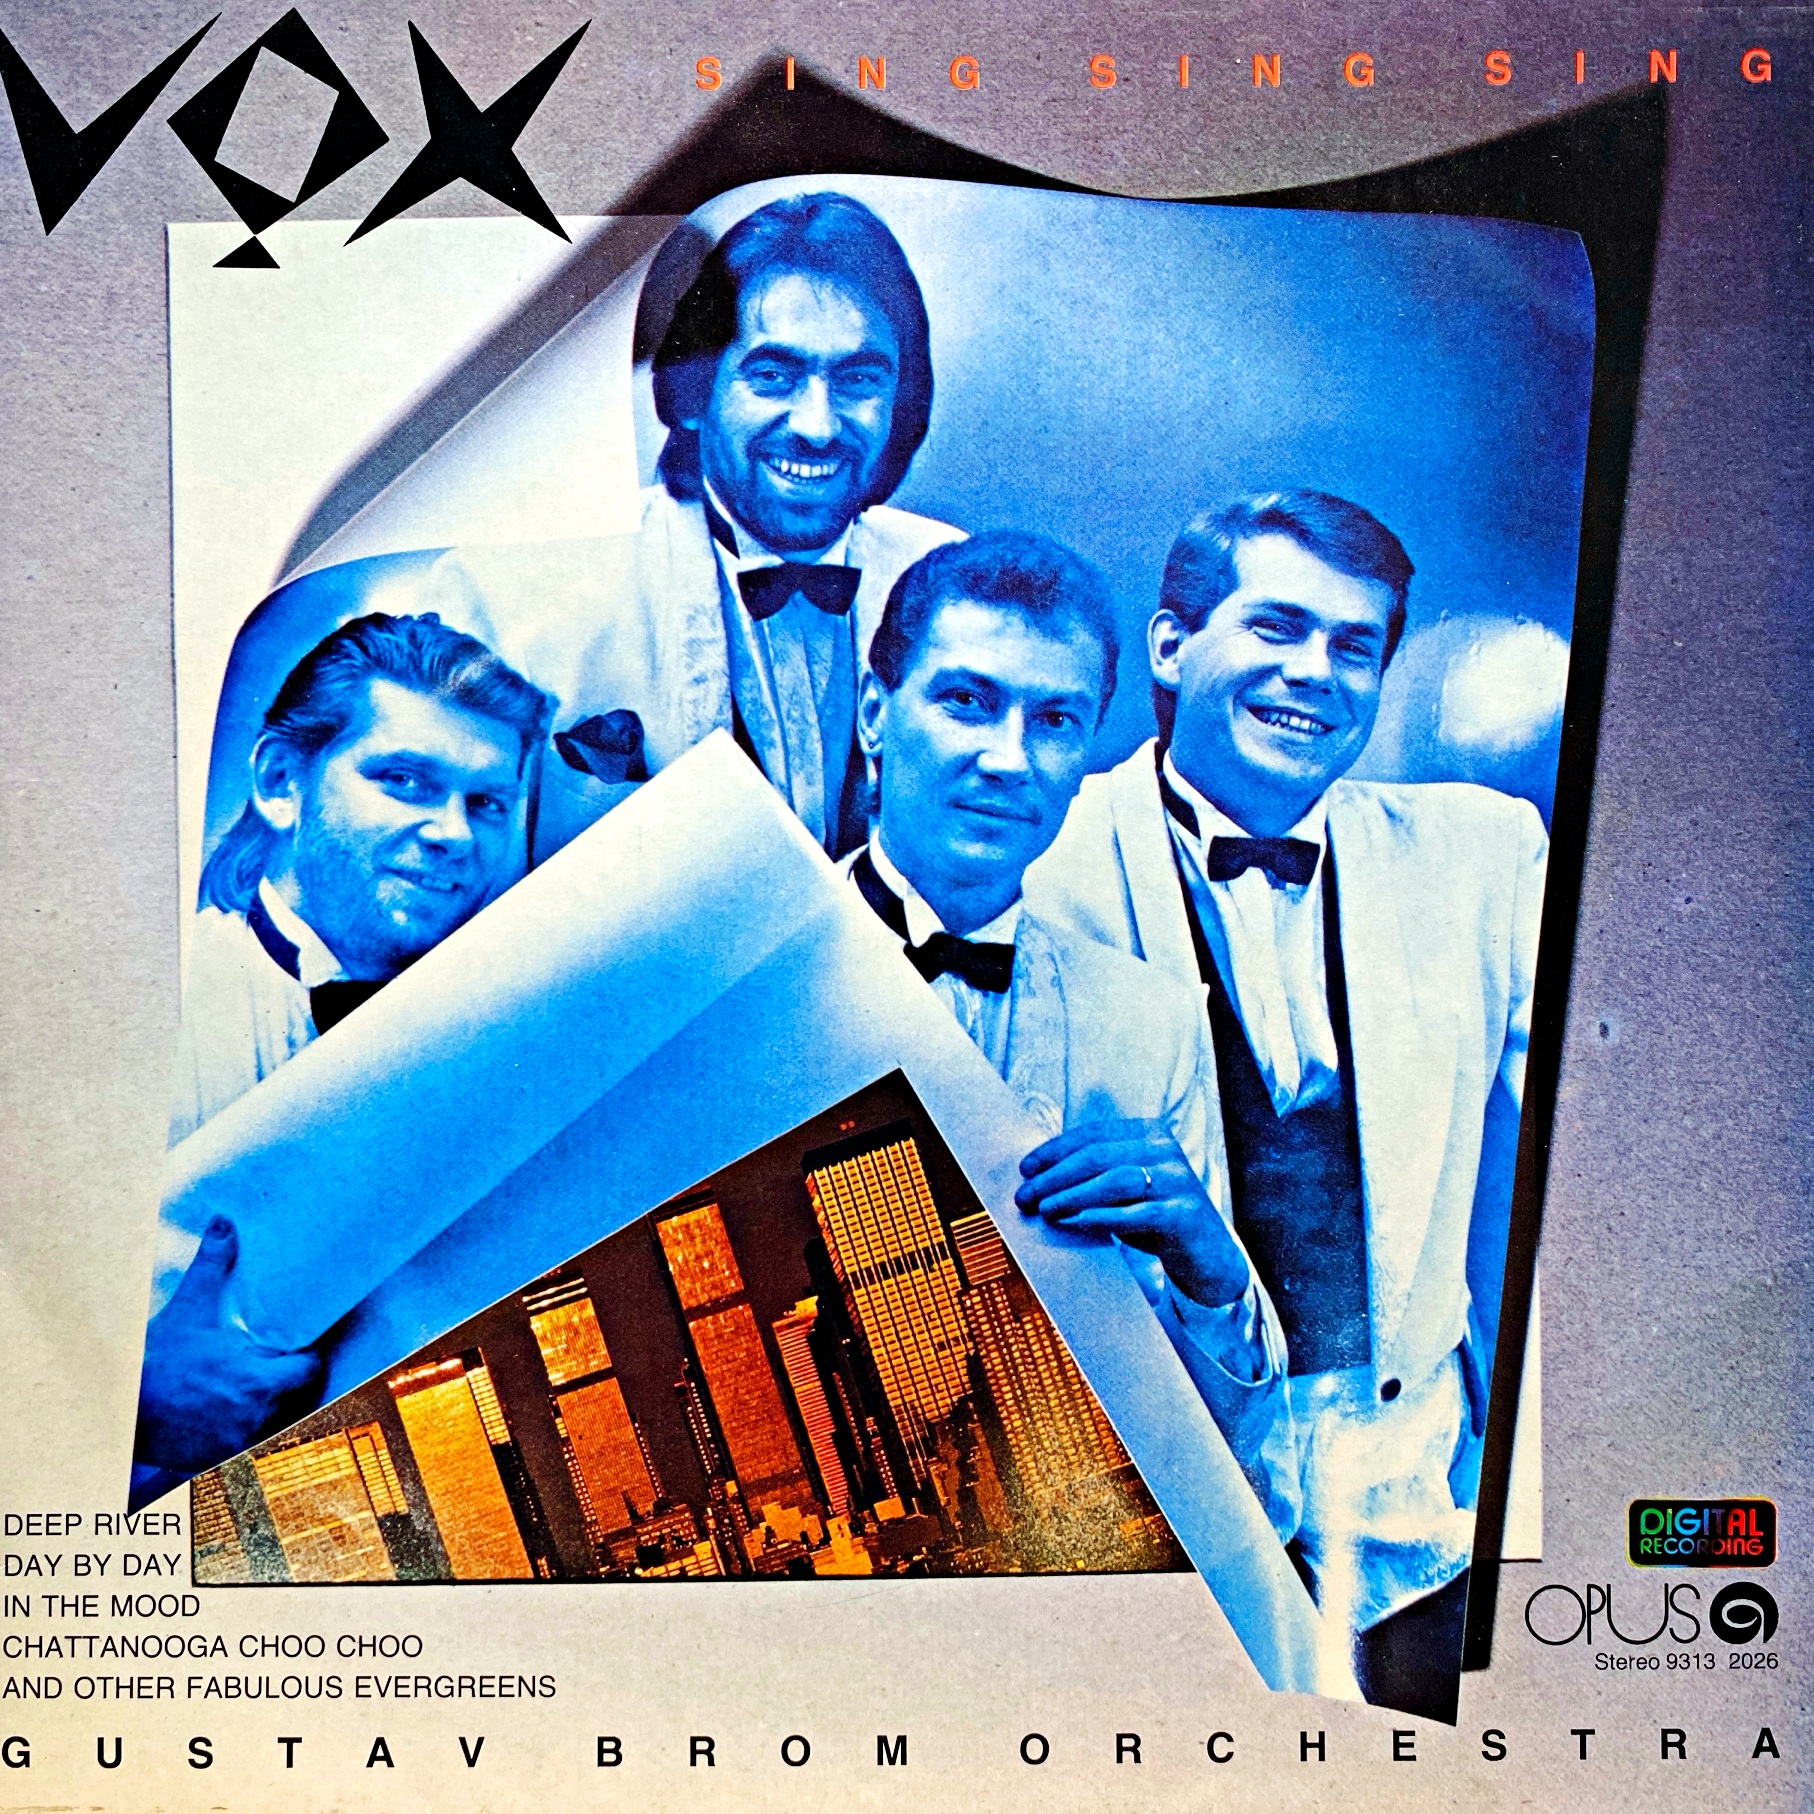 LP VOX & Gustav Brom Orchestra – Sing Sing Sing